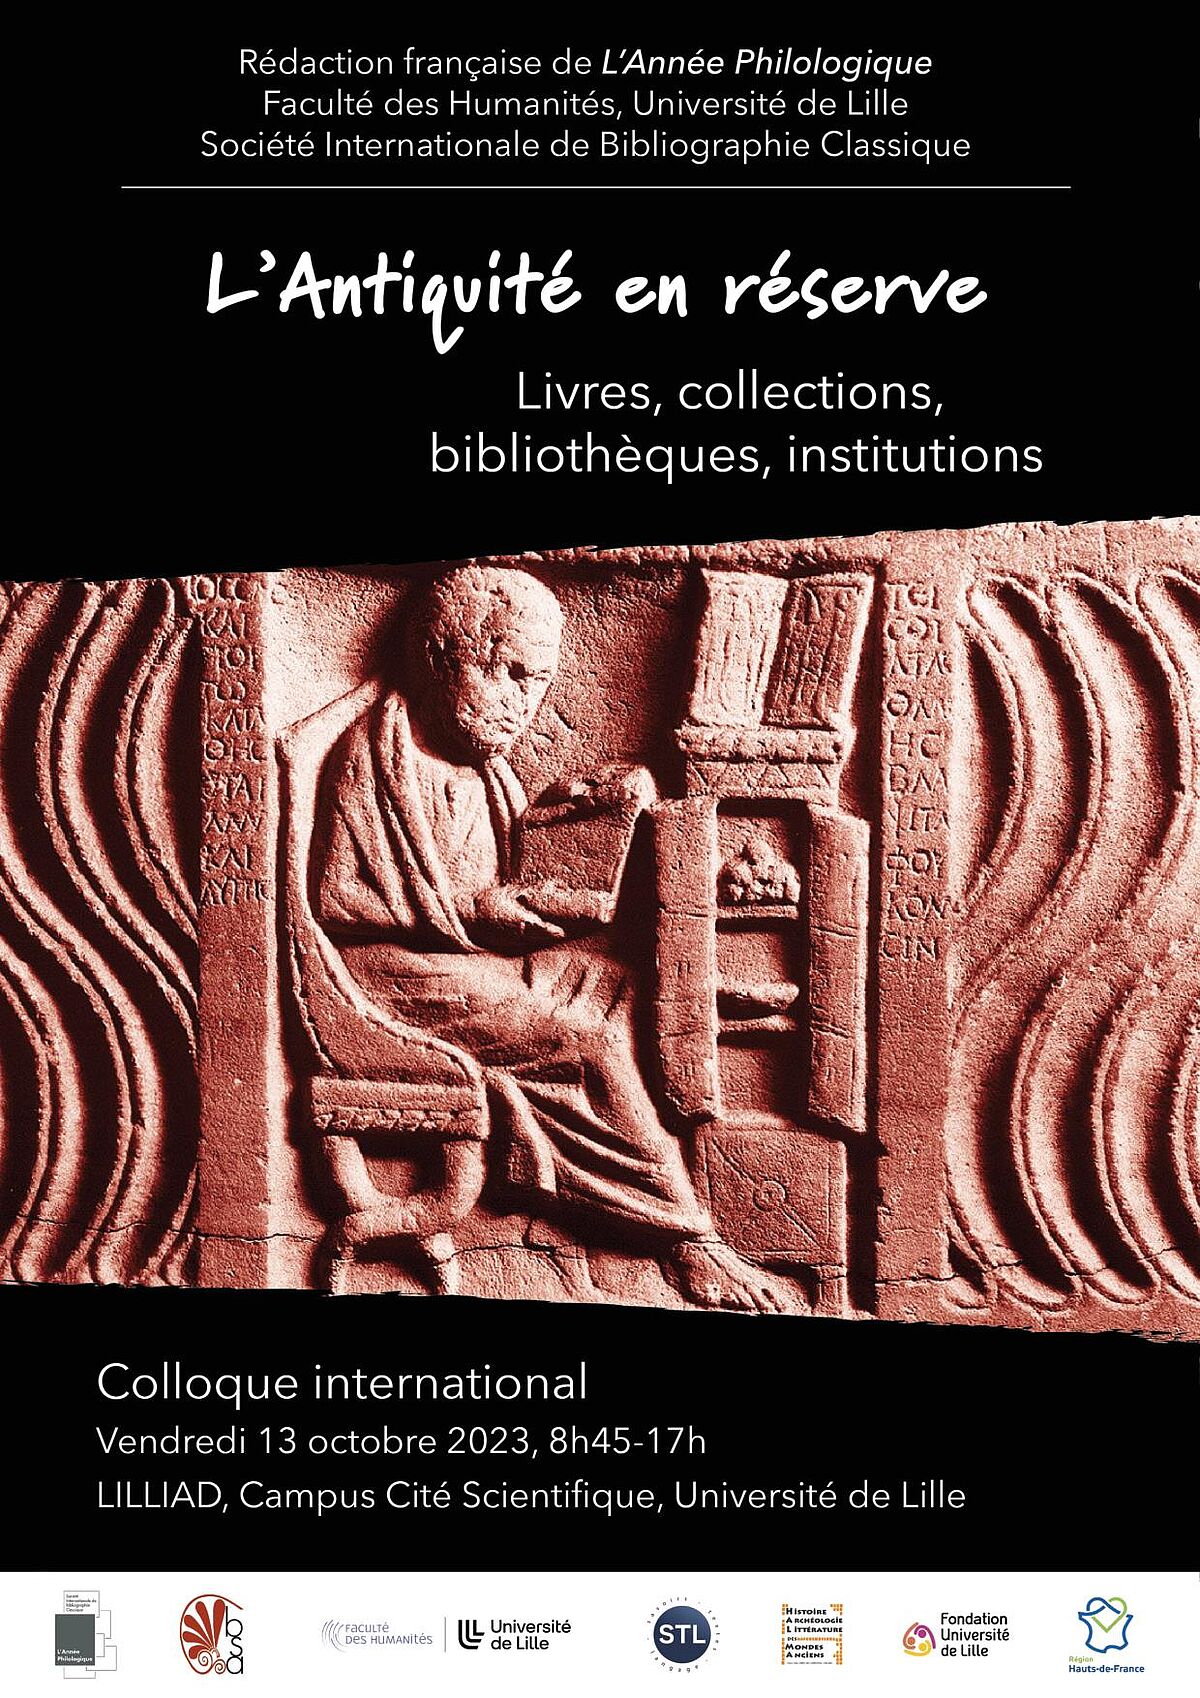 Programme – Colloque “Imagerie scientifique et objet archéologique